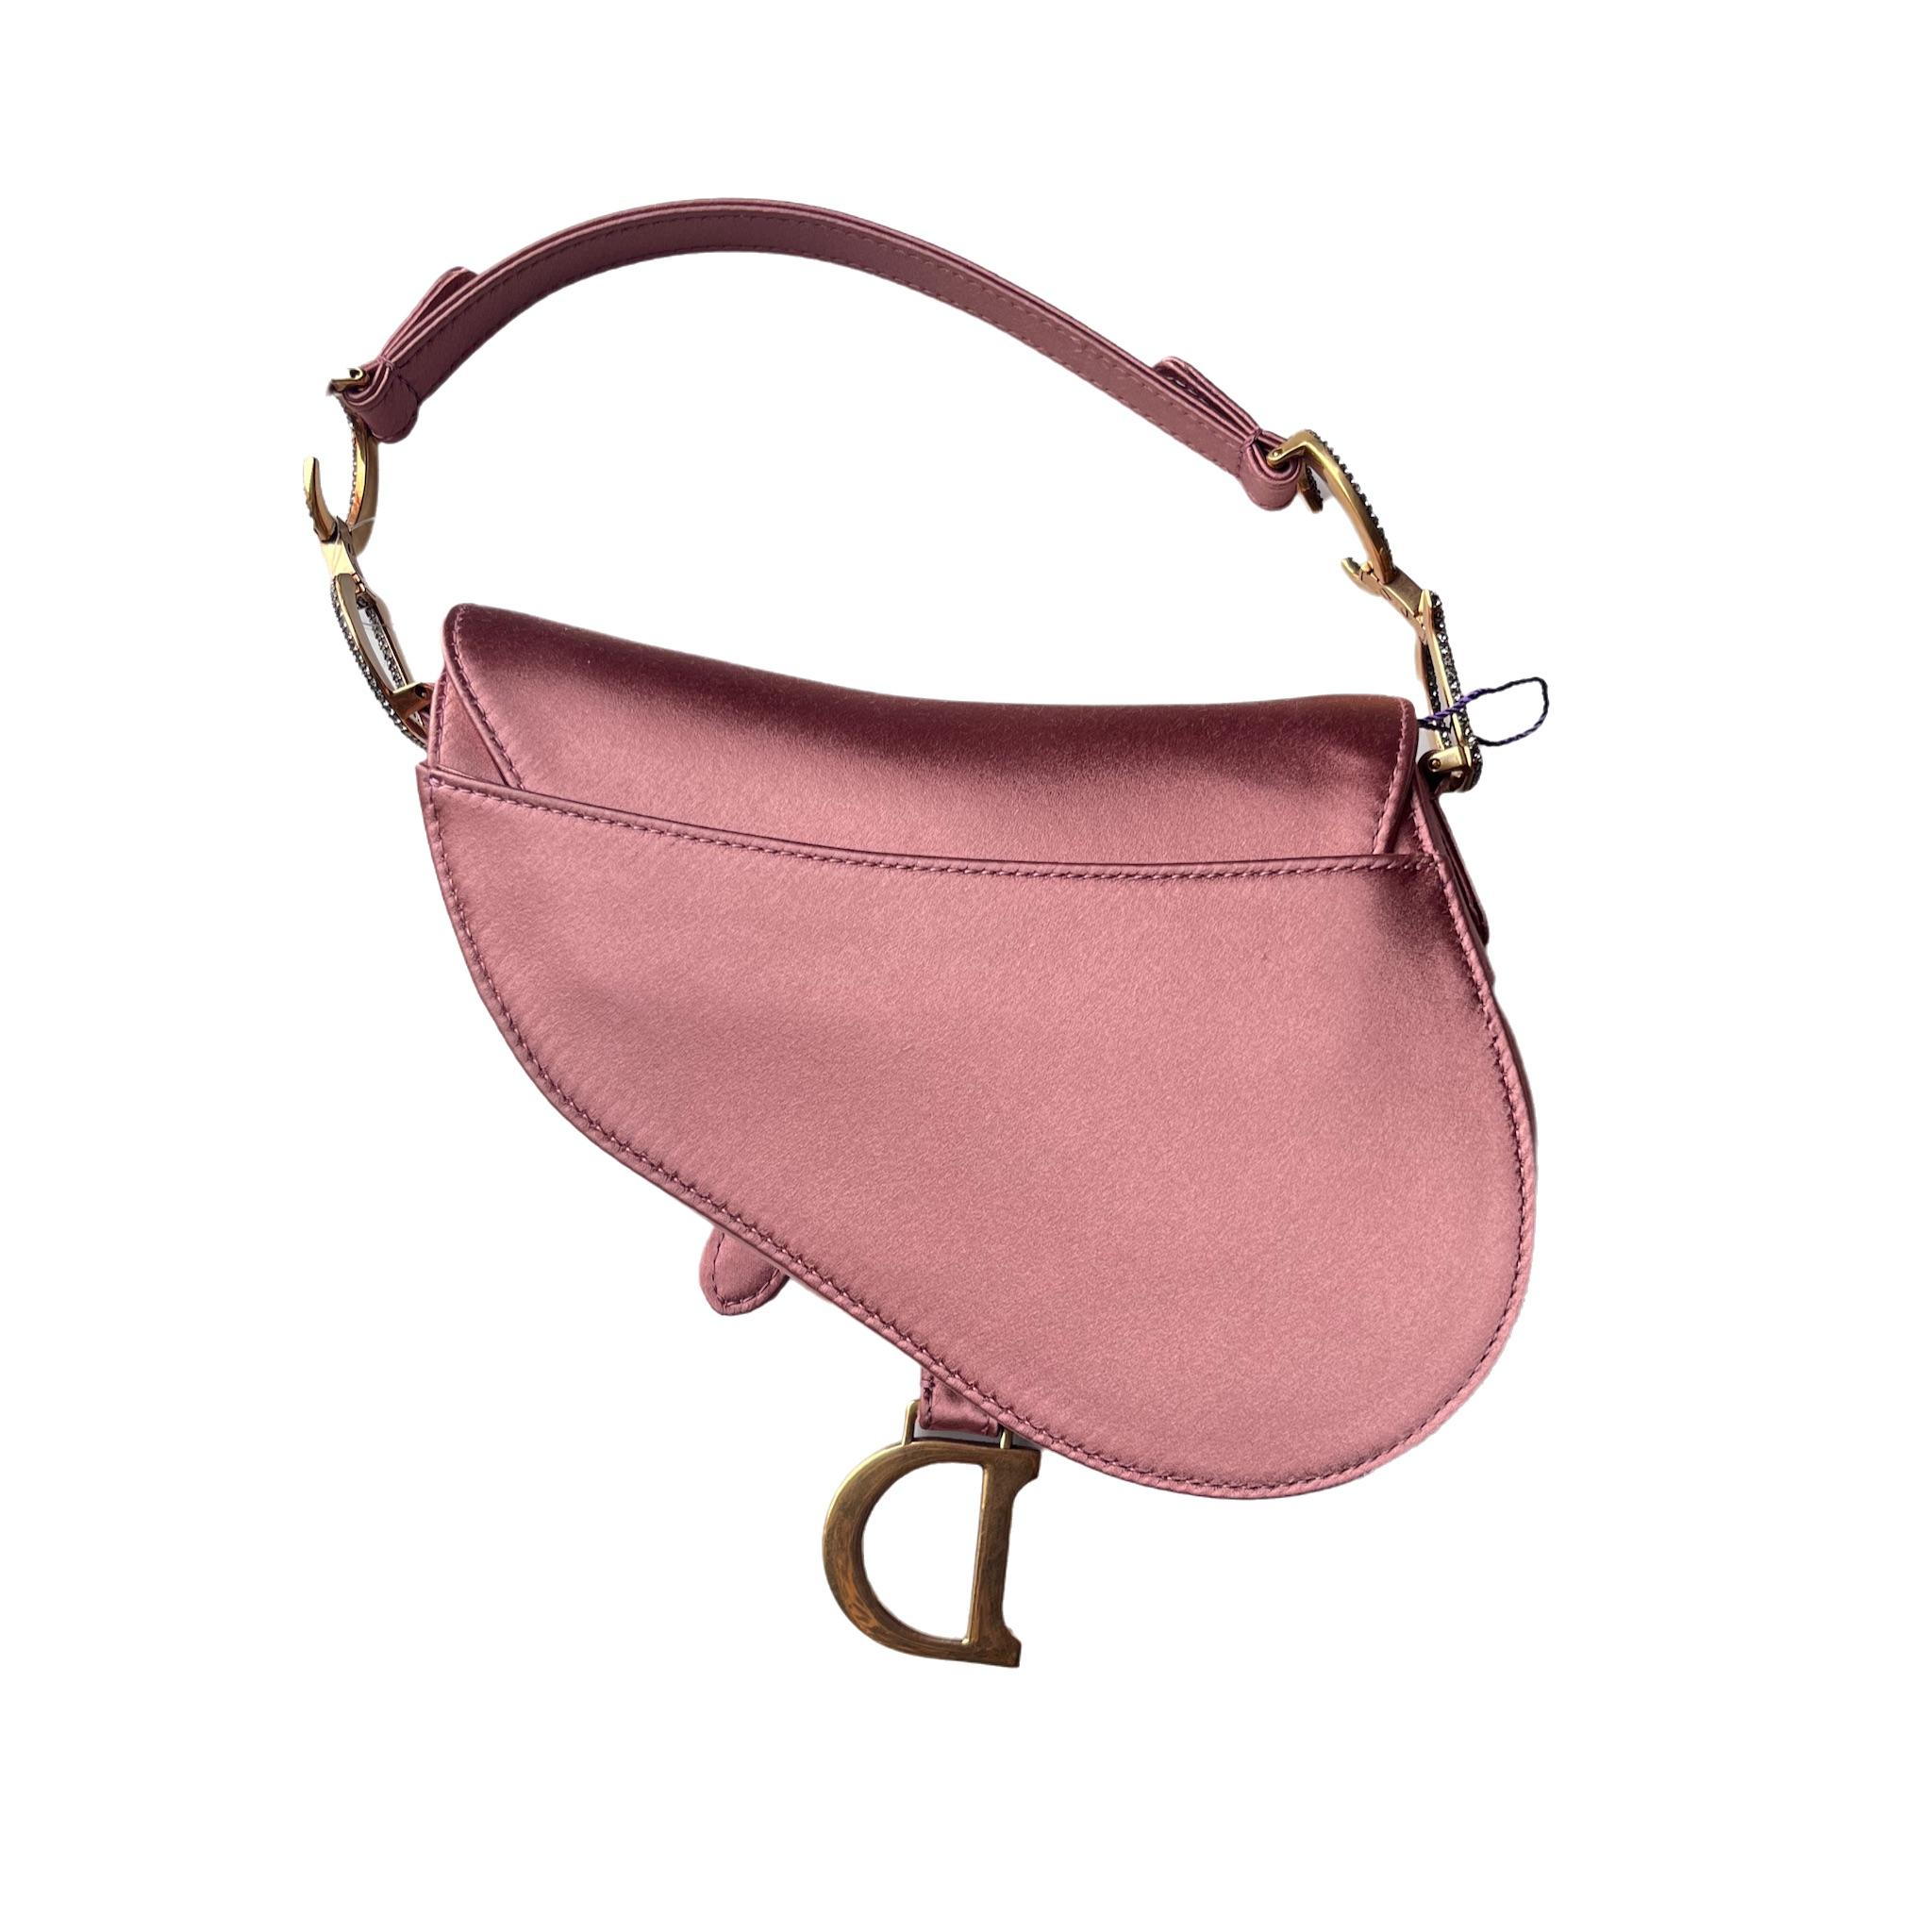 Dior Saddle Bag aus rosafarbenem Seidensatin, das legendäre Design in der Größe Mini, mit magnetischem Überschlag und einem CD-Schriftzug in Kristallverzierung auf beiden Seiten des Riemens. Die Satteltasche kann mit der Hand getragen werden. 

Das